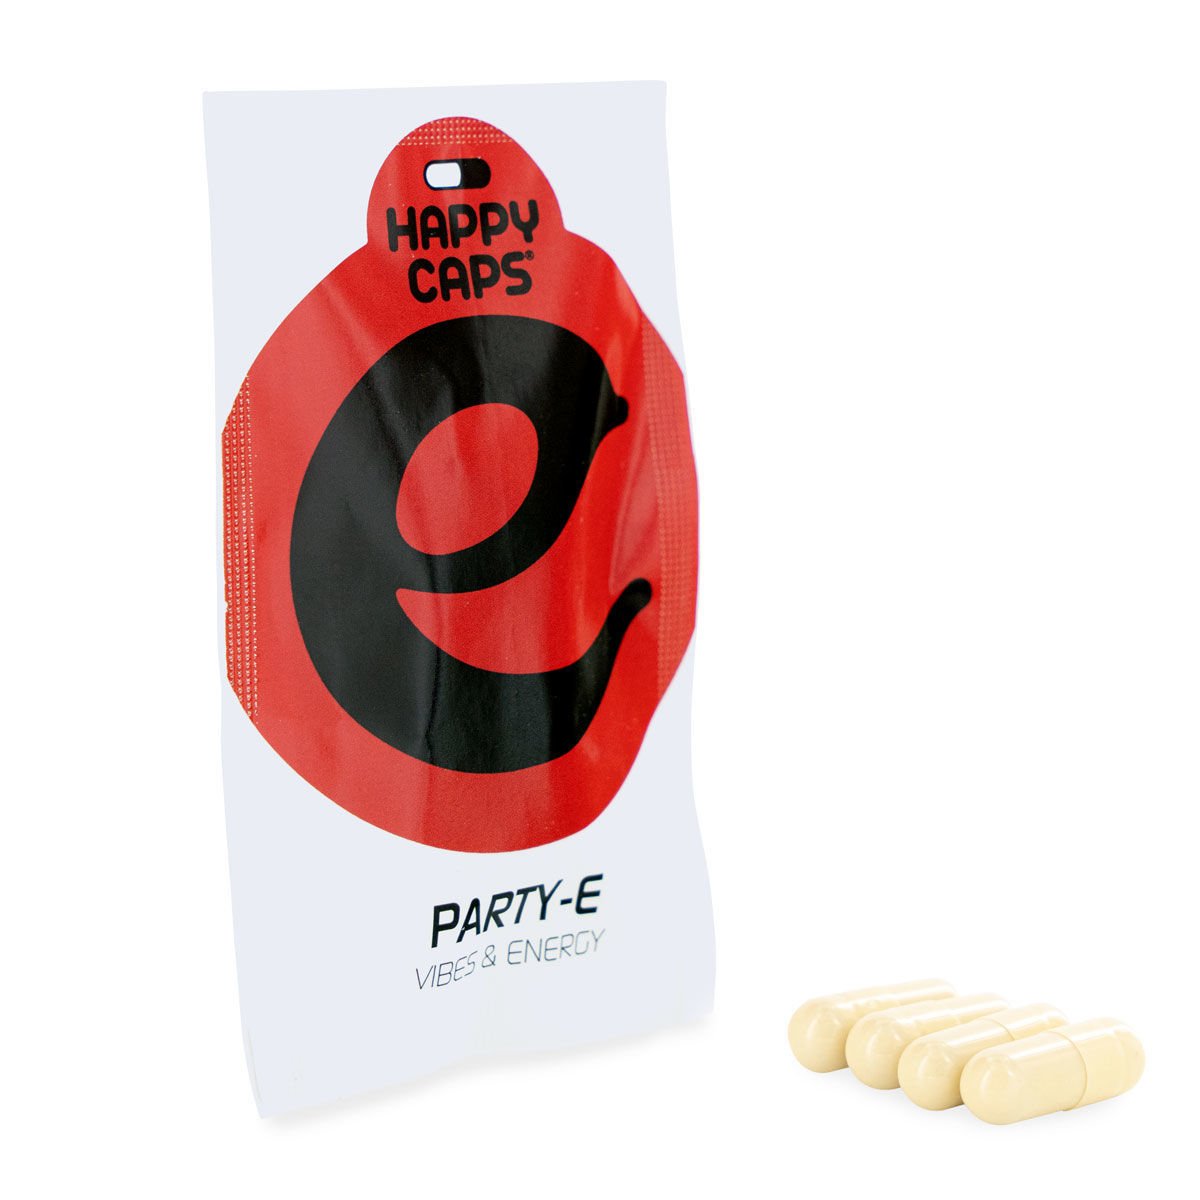 Happy Caps tablety obsahujú rôzne byliny, vďaka čomu ponúkajú rôzne účinky